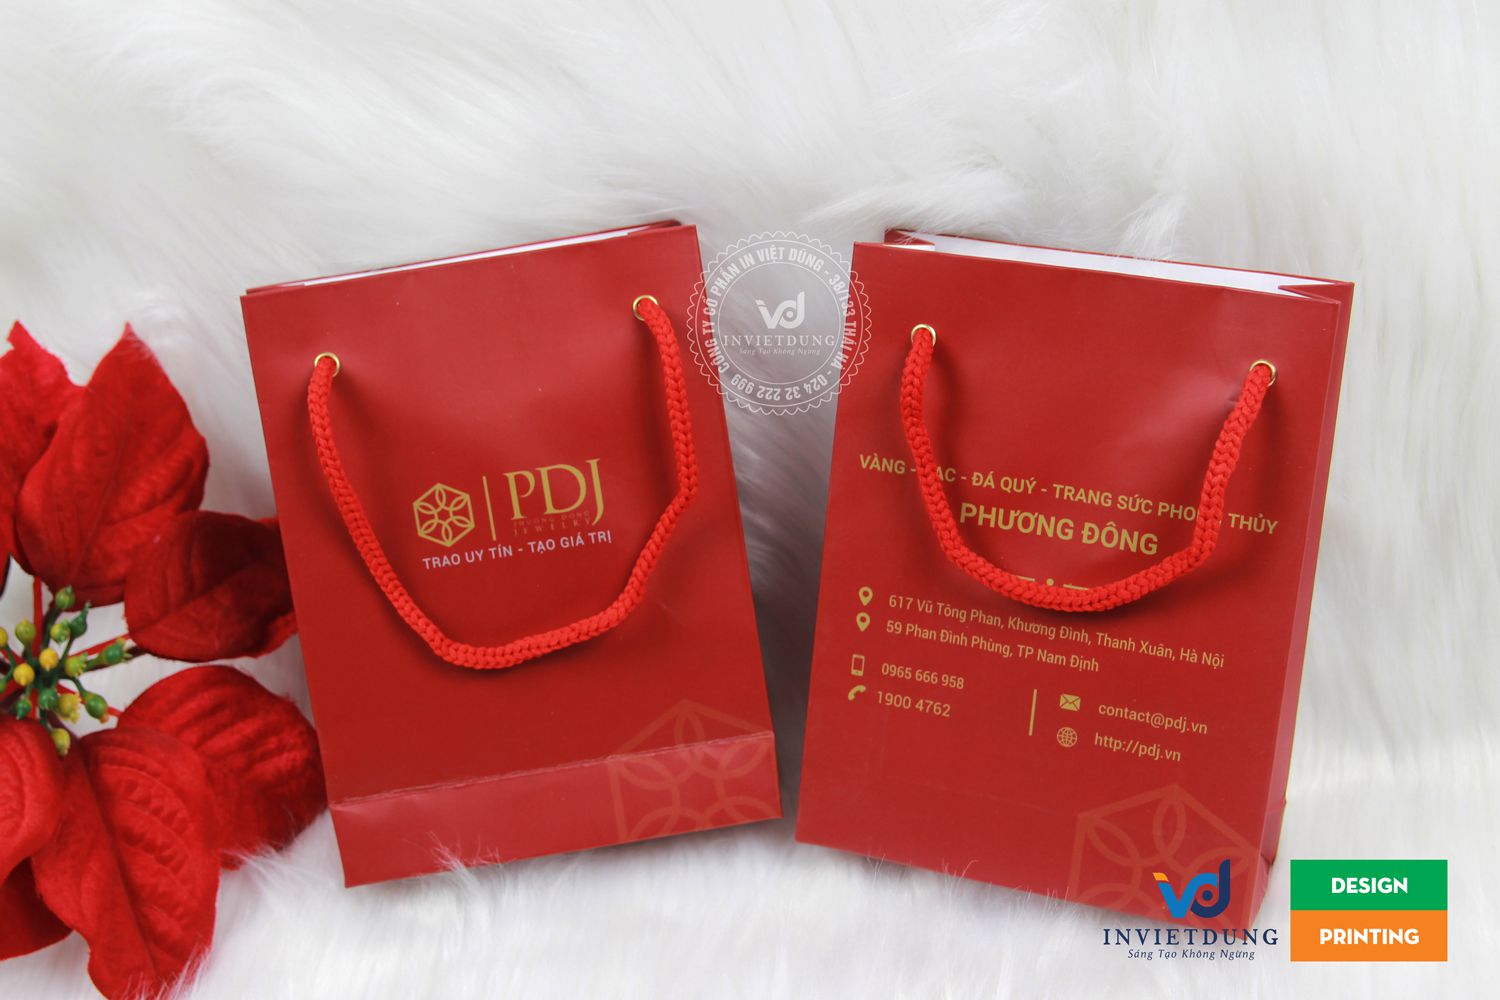 In túi bằng giấy couches đẹp và sang trọng cho cửa hàng trang sức PDJ tại Hà Nội